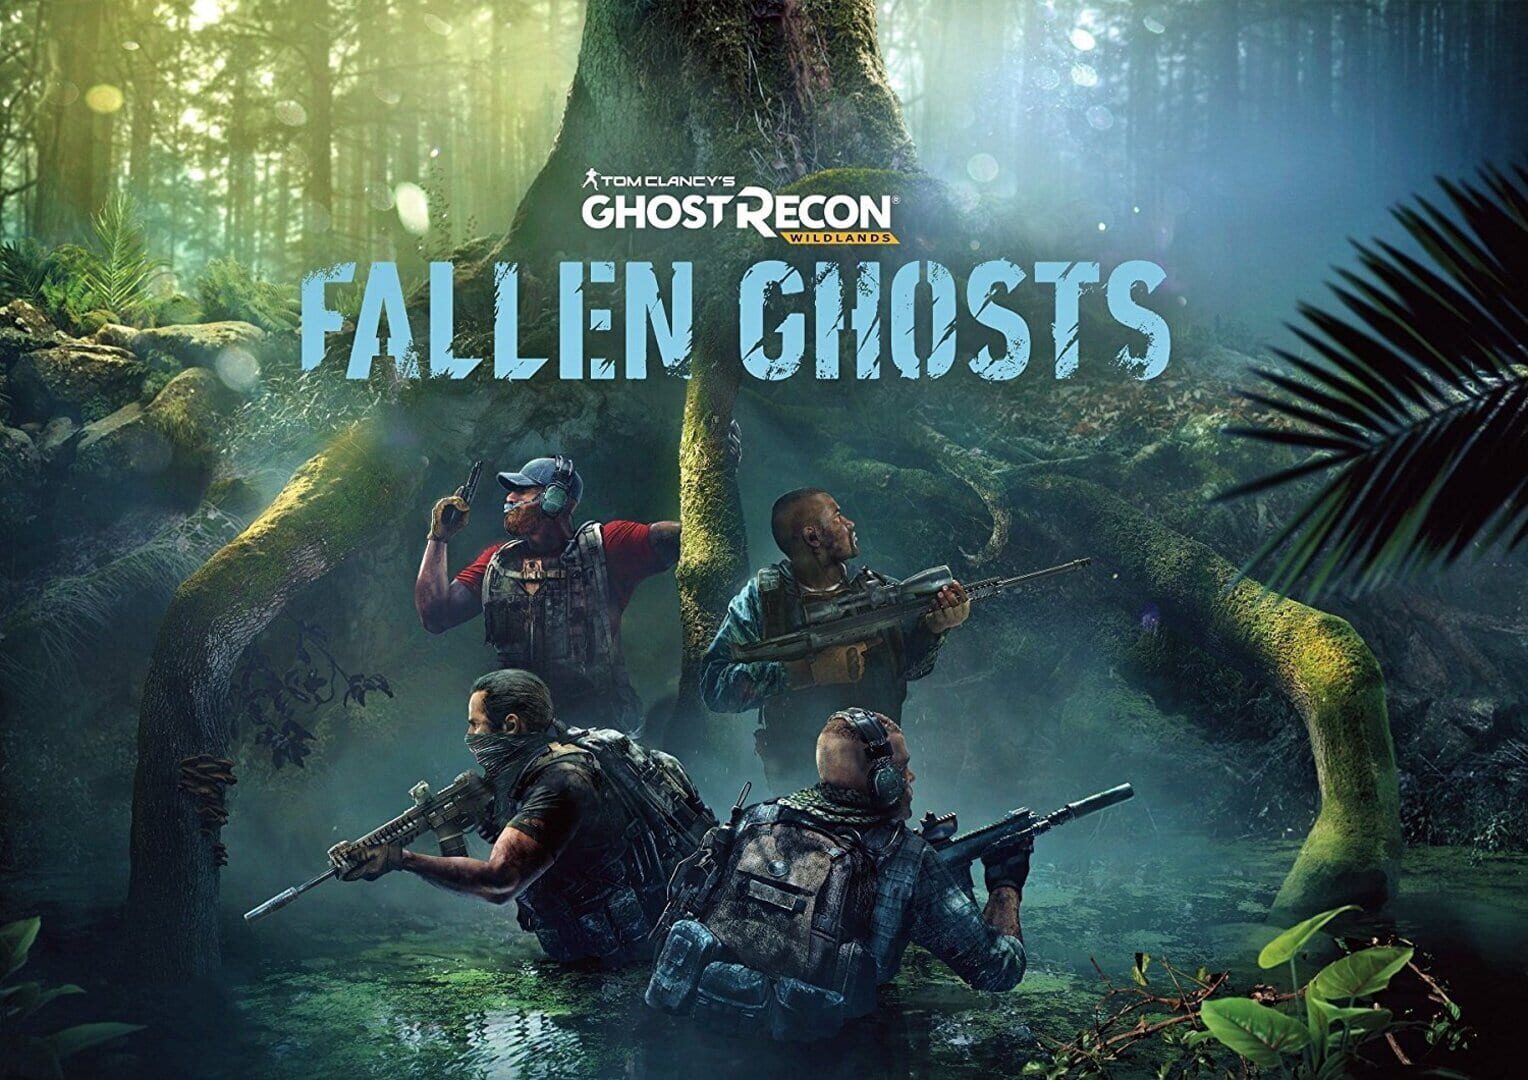 Tom Clancy's Ghost Recon: Wildlands - Fallen Ghosts Image